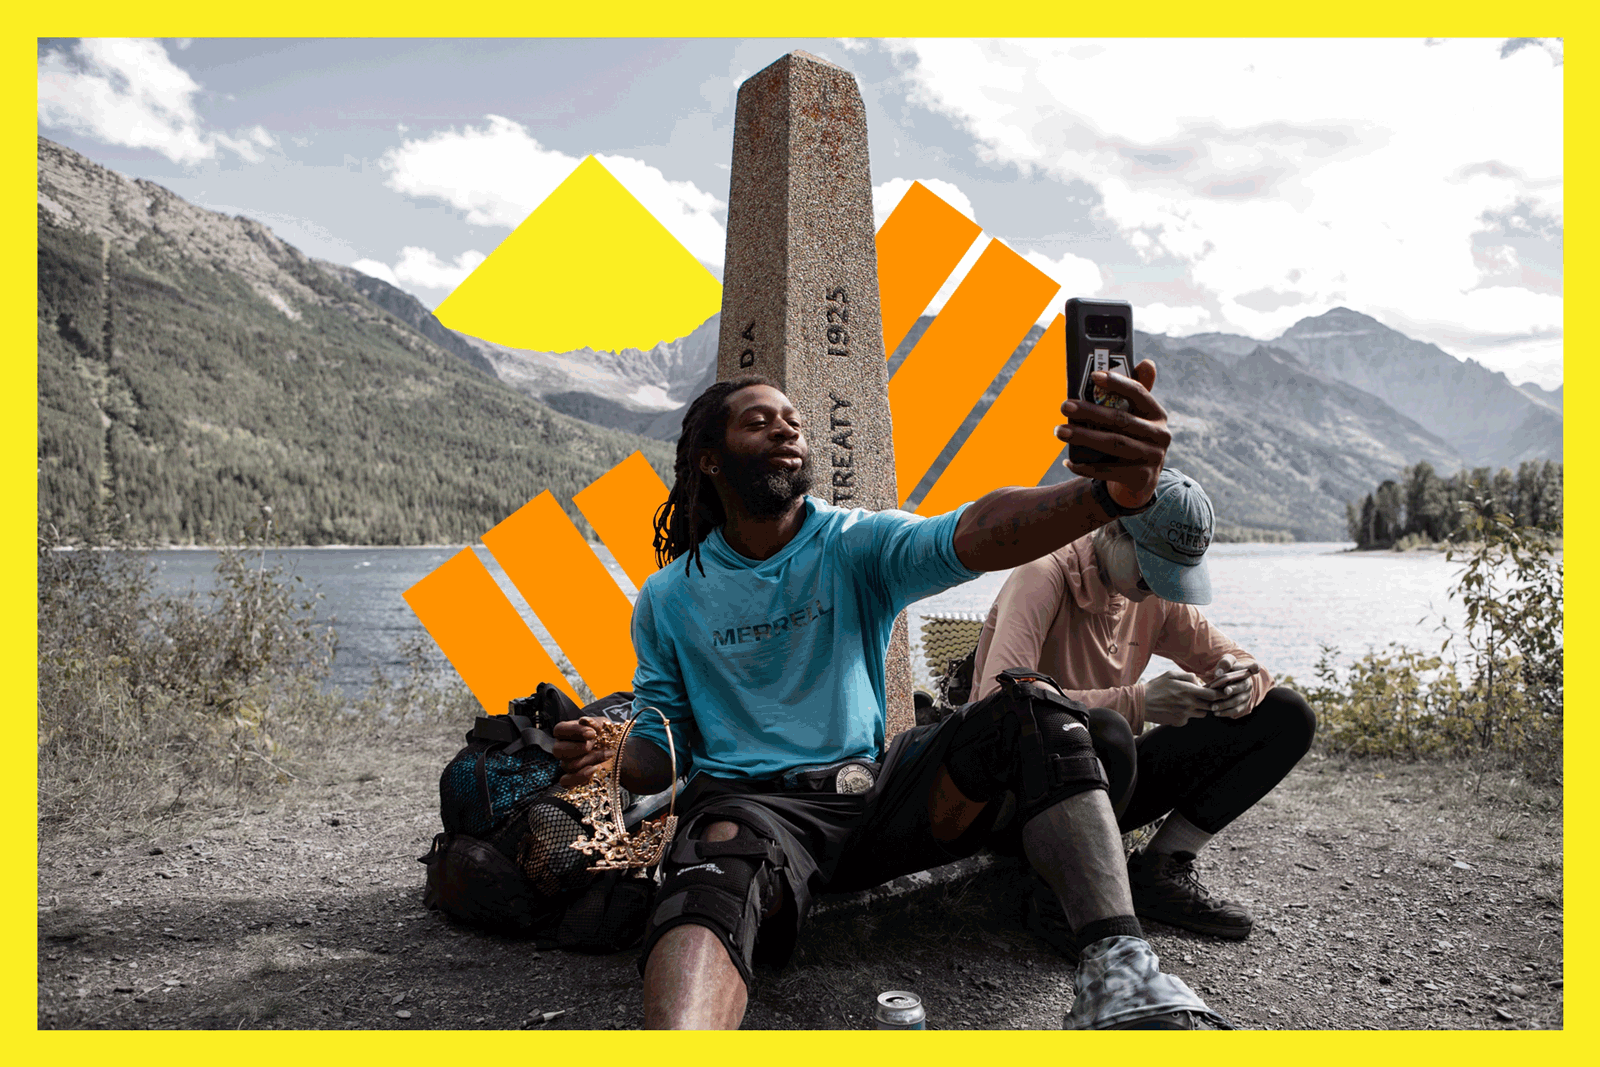 Akuna Robinson takes a selfie near a lake